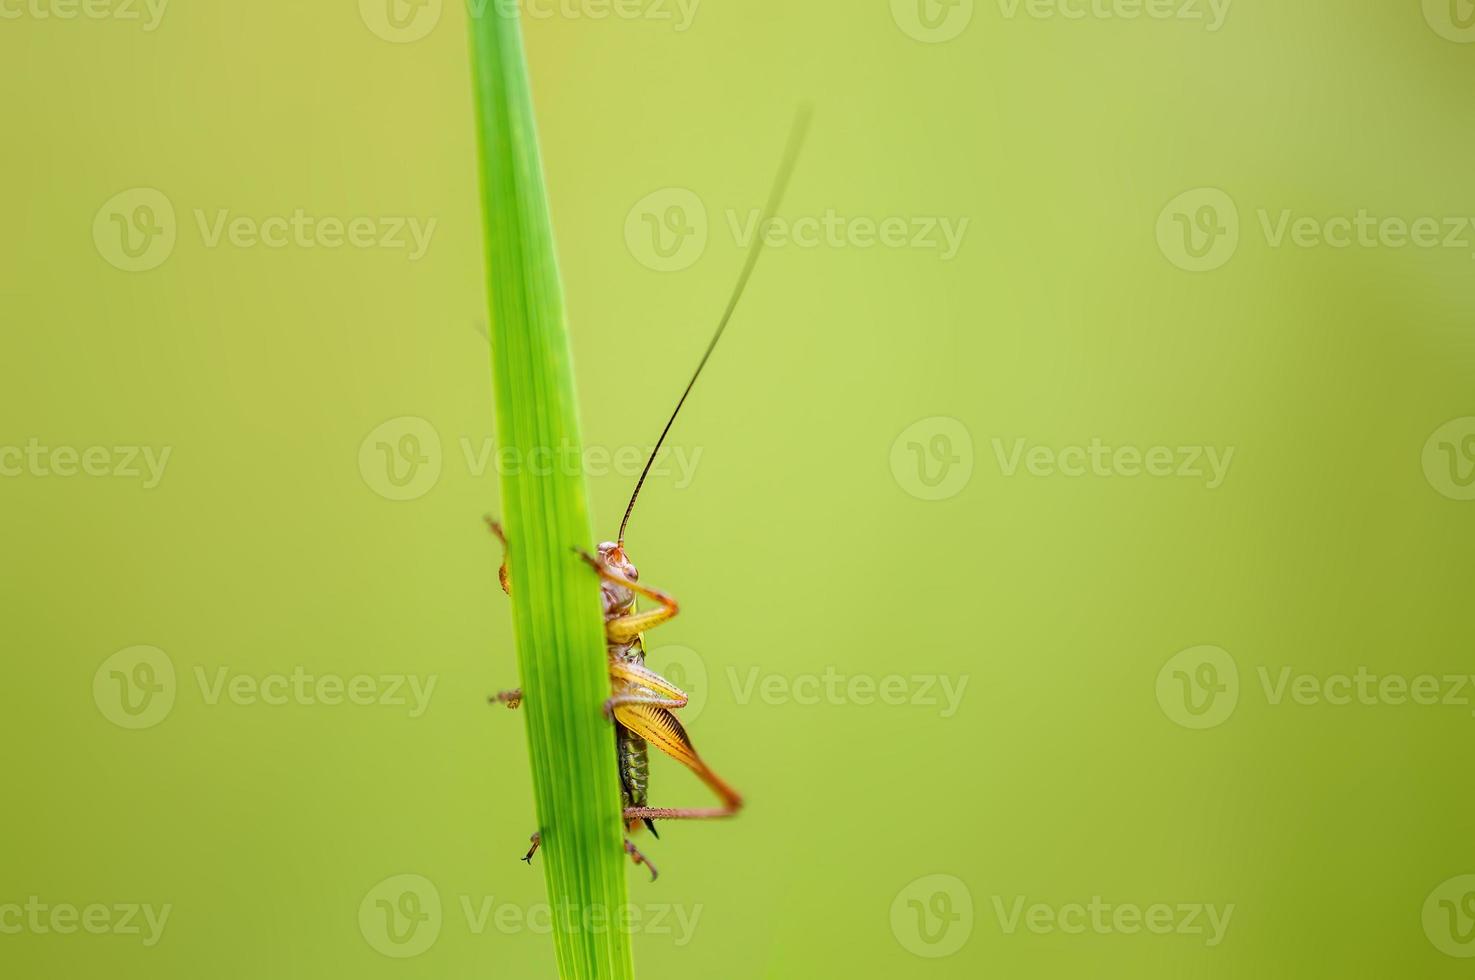 ett grön gräshoppa sitter på en stjälk i en äng foto